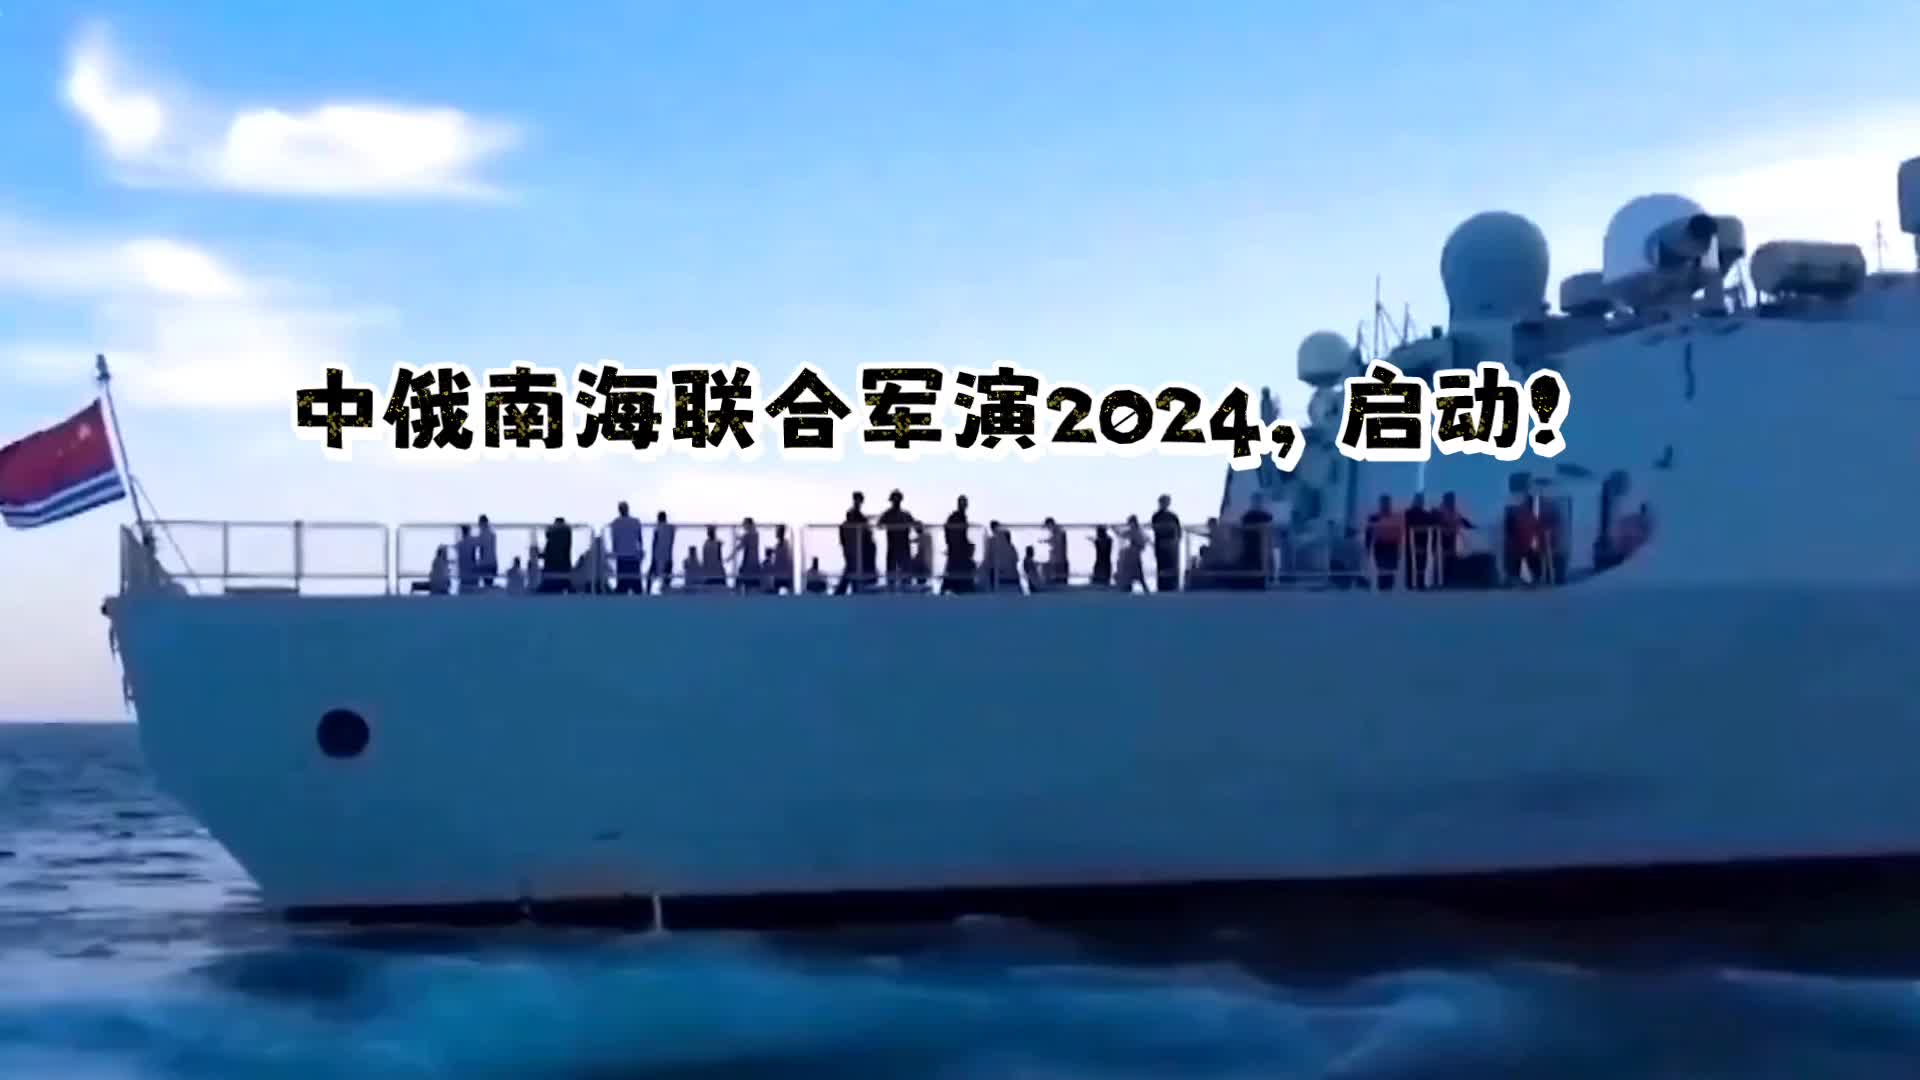 中俄南海联合军演2024,启动!